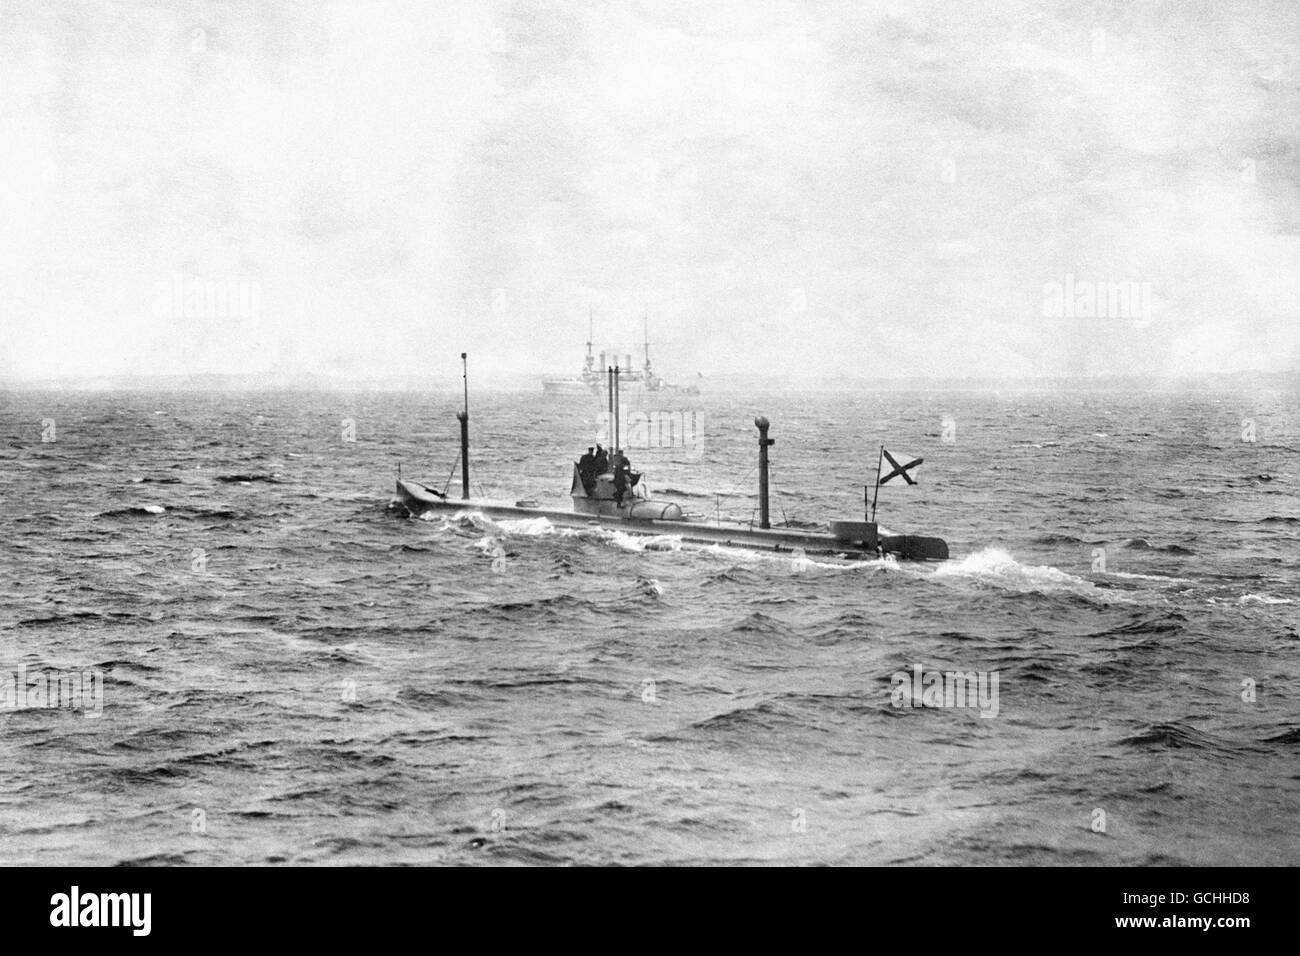 U-BOOT DER RUSSISCHEN MARINE : 1914. DIE RUSSISCHE MARINE: DAS U-BOOT 'KAMBALA' IM JAHR 1914. Stockfoto